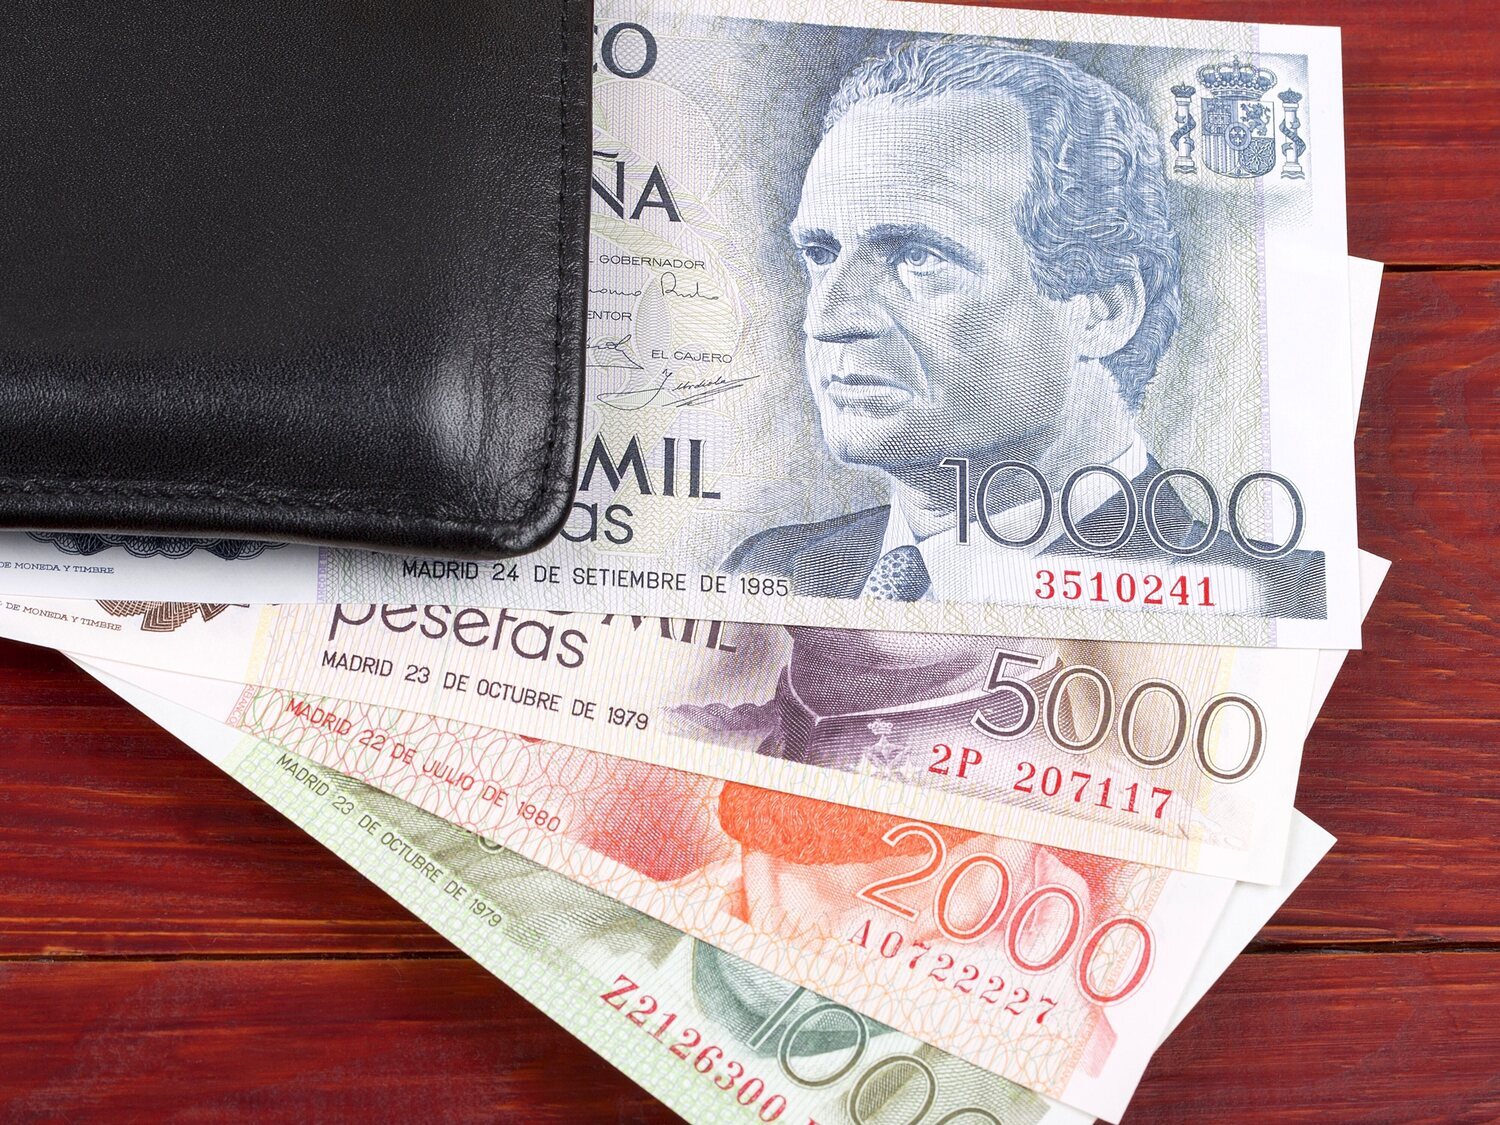 El hombre que encontró nueve millones de pesetas en botes de Nesquik encuentra comprador para los billetes